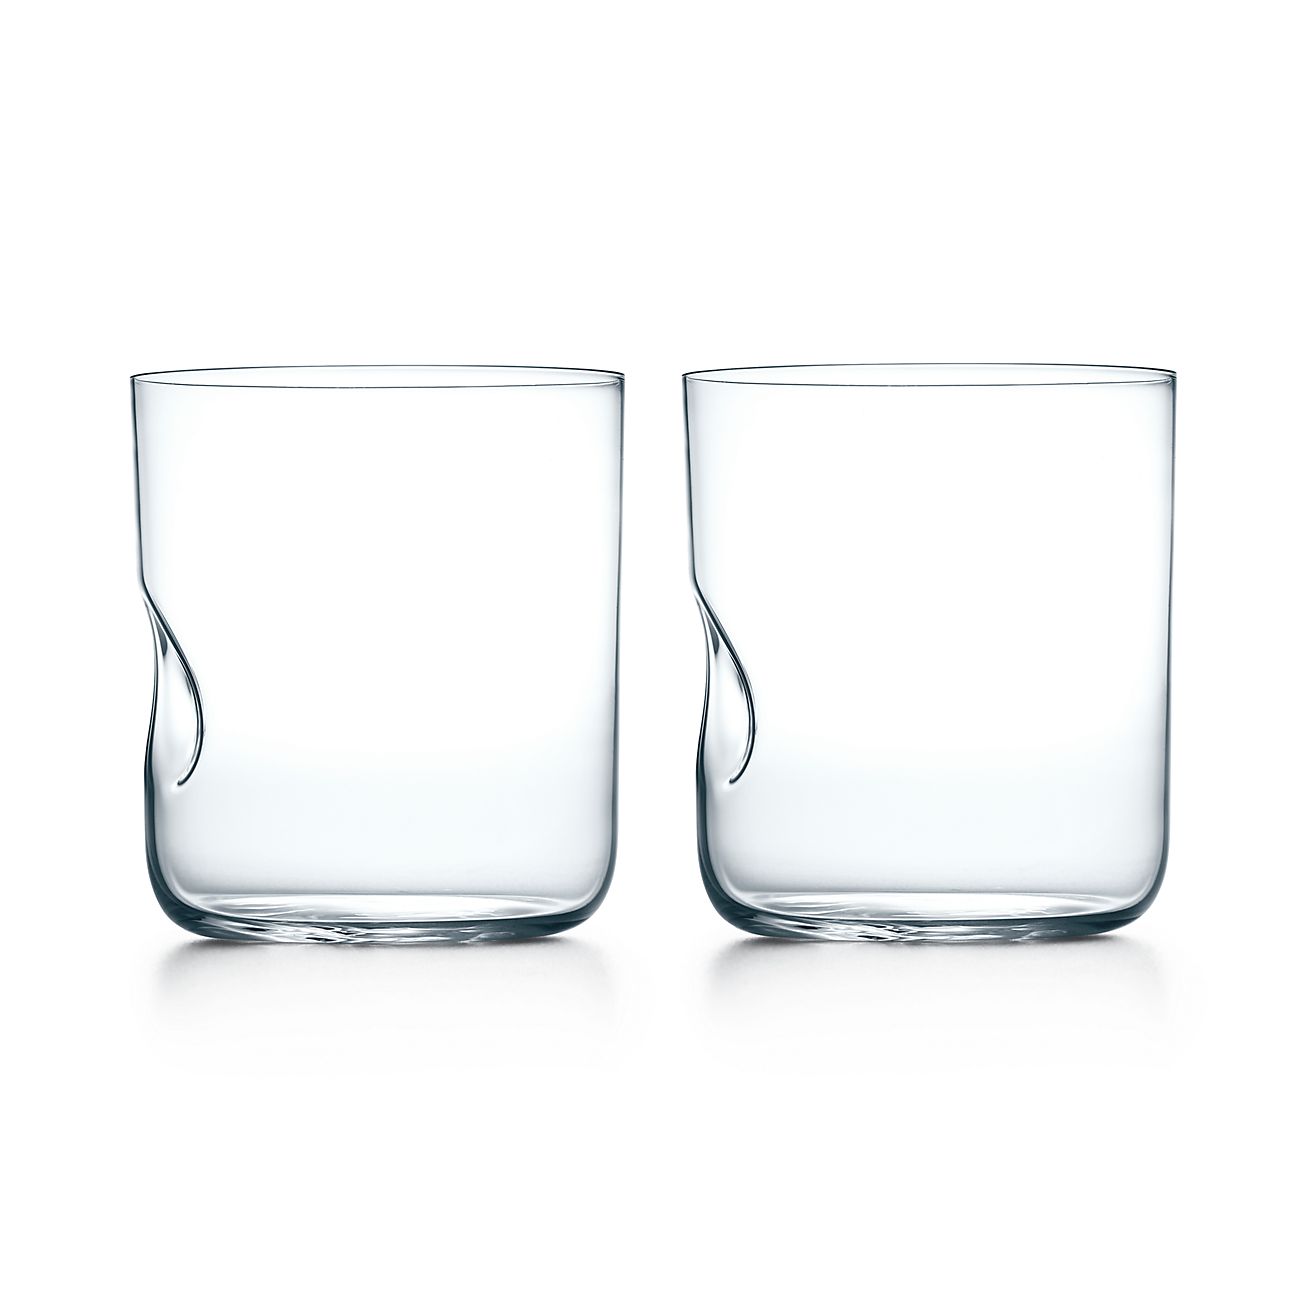 エルサ・ペレッティ™ サムプリント グラス リードクリスタル、2個